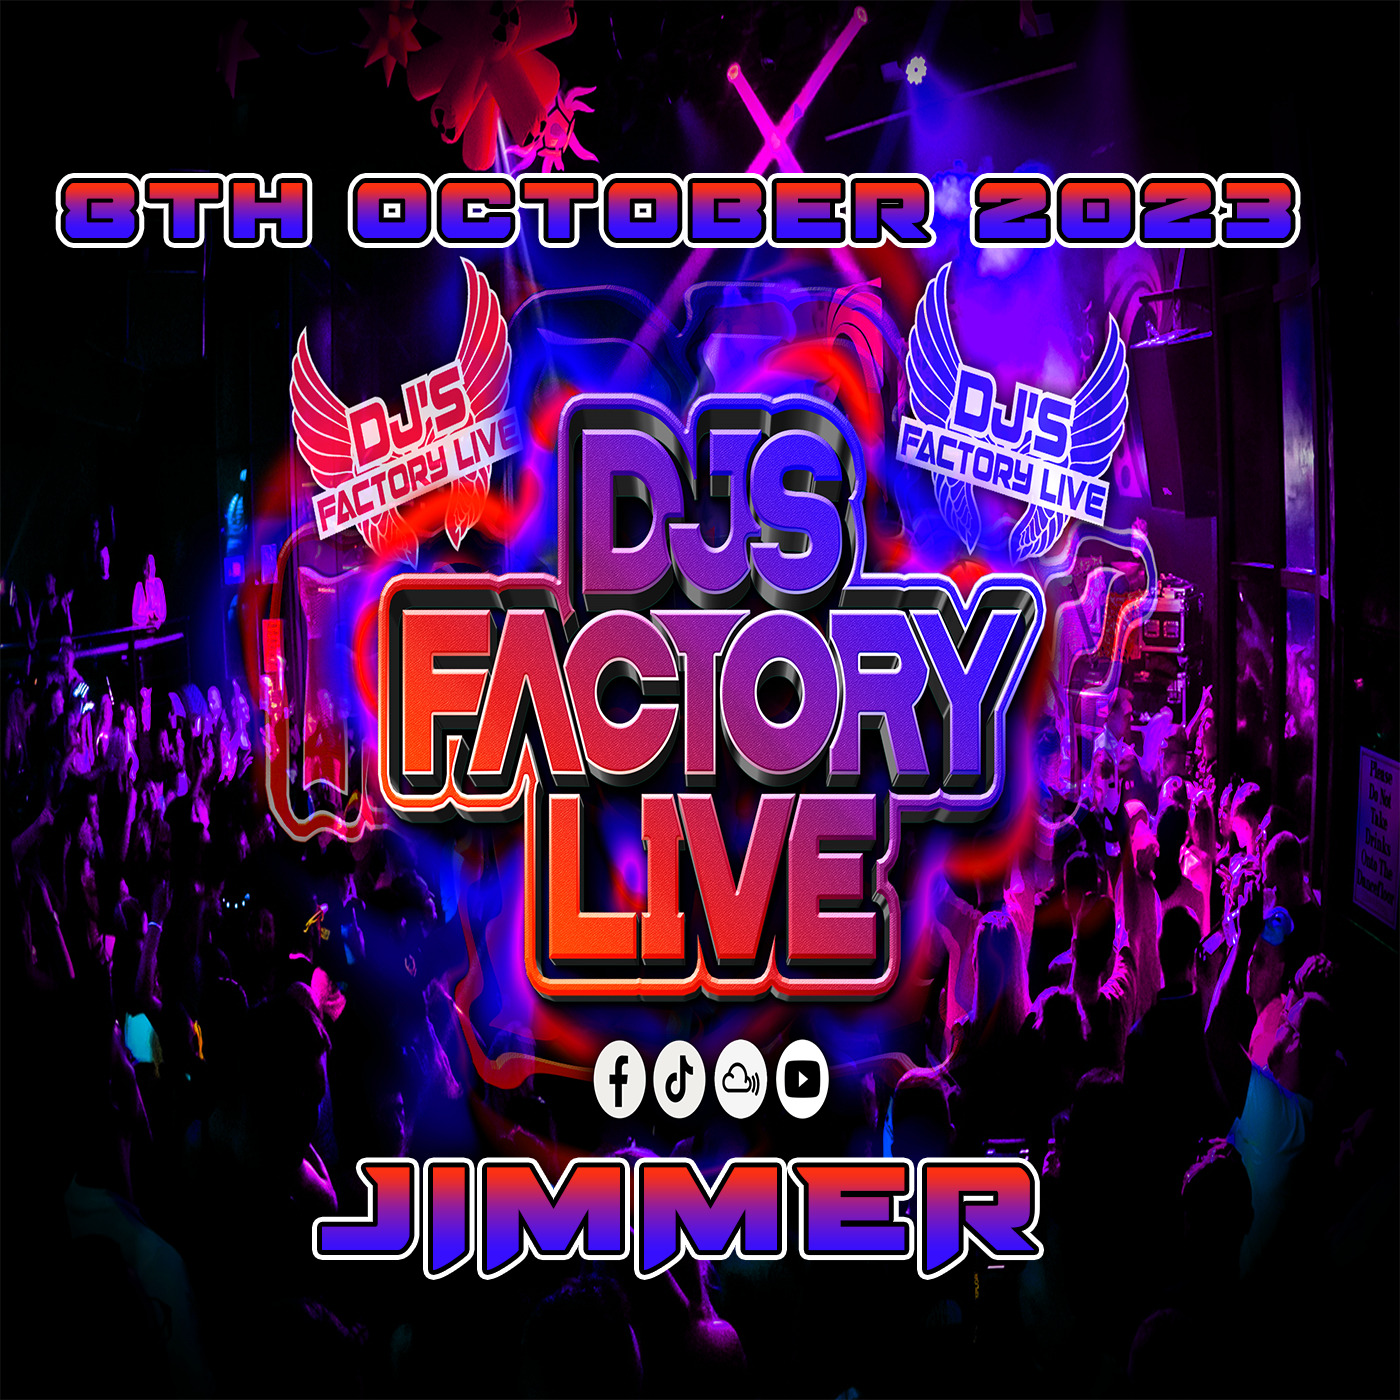 Jimmer - DJs Factory 8th October 2023